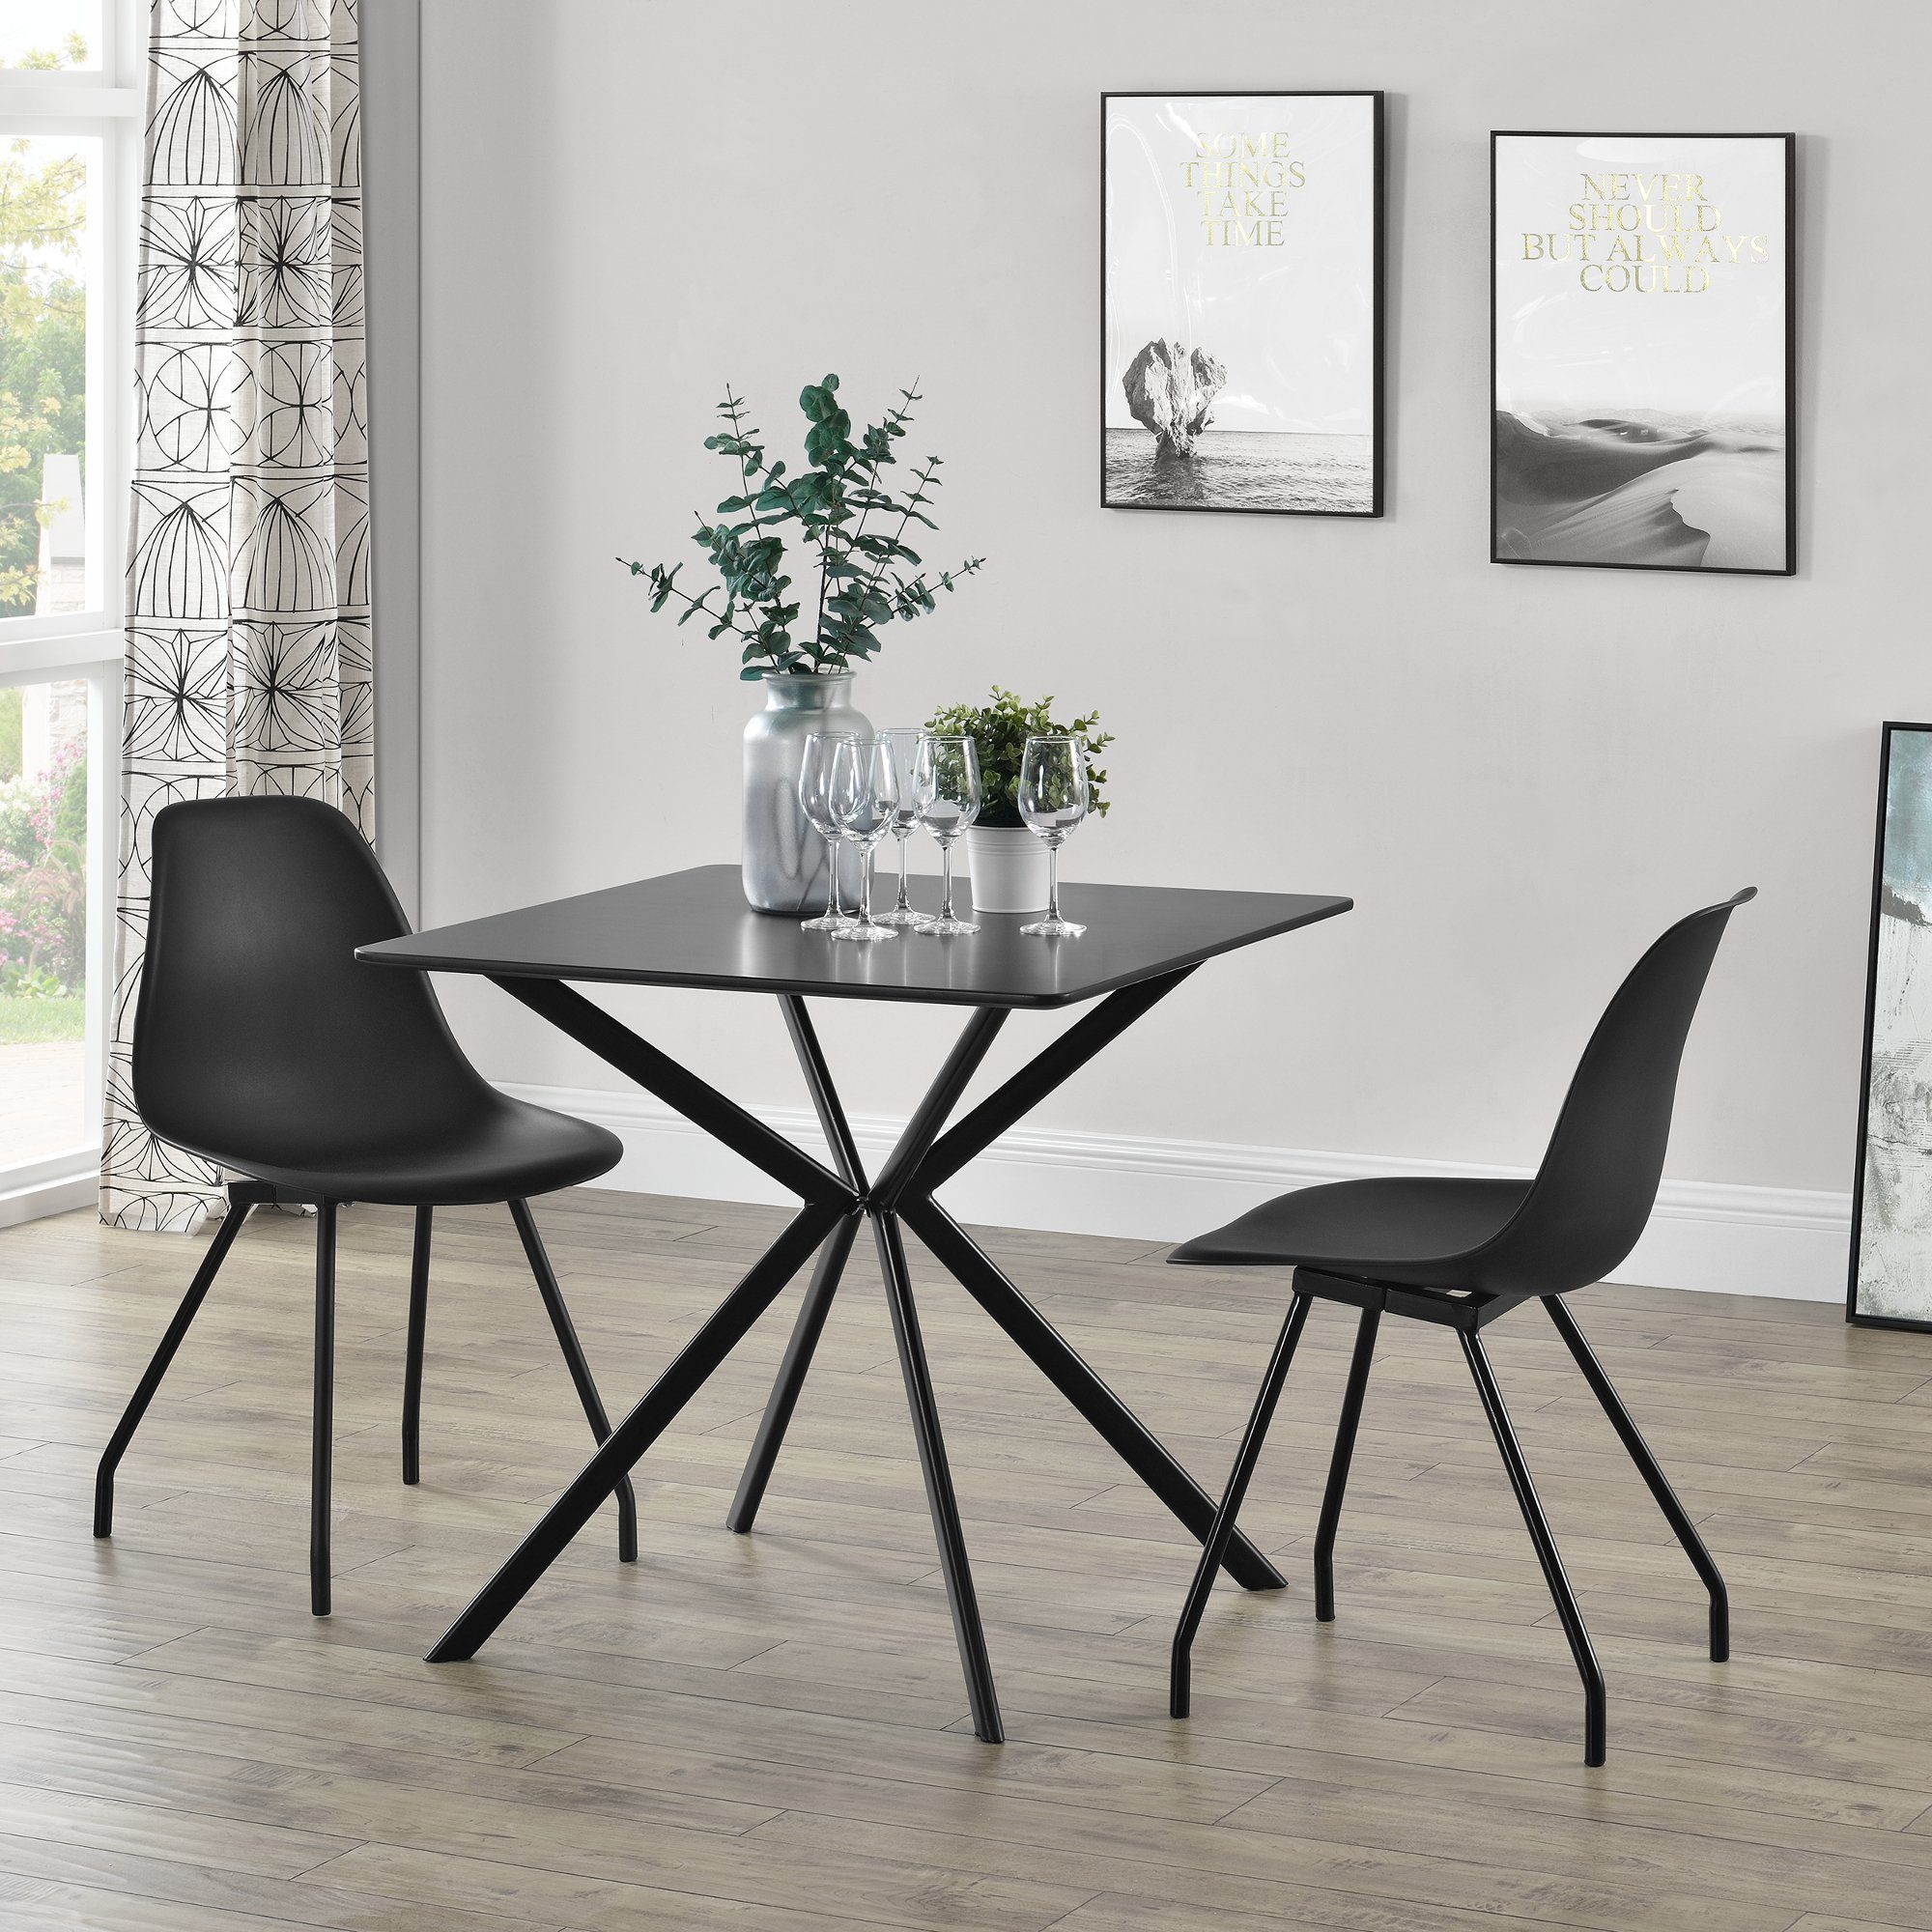 ® Esstisch mit 4 Stühlen weiß 120x60cm Küchentisch Esszimmertisch Tisch en.casa 